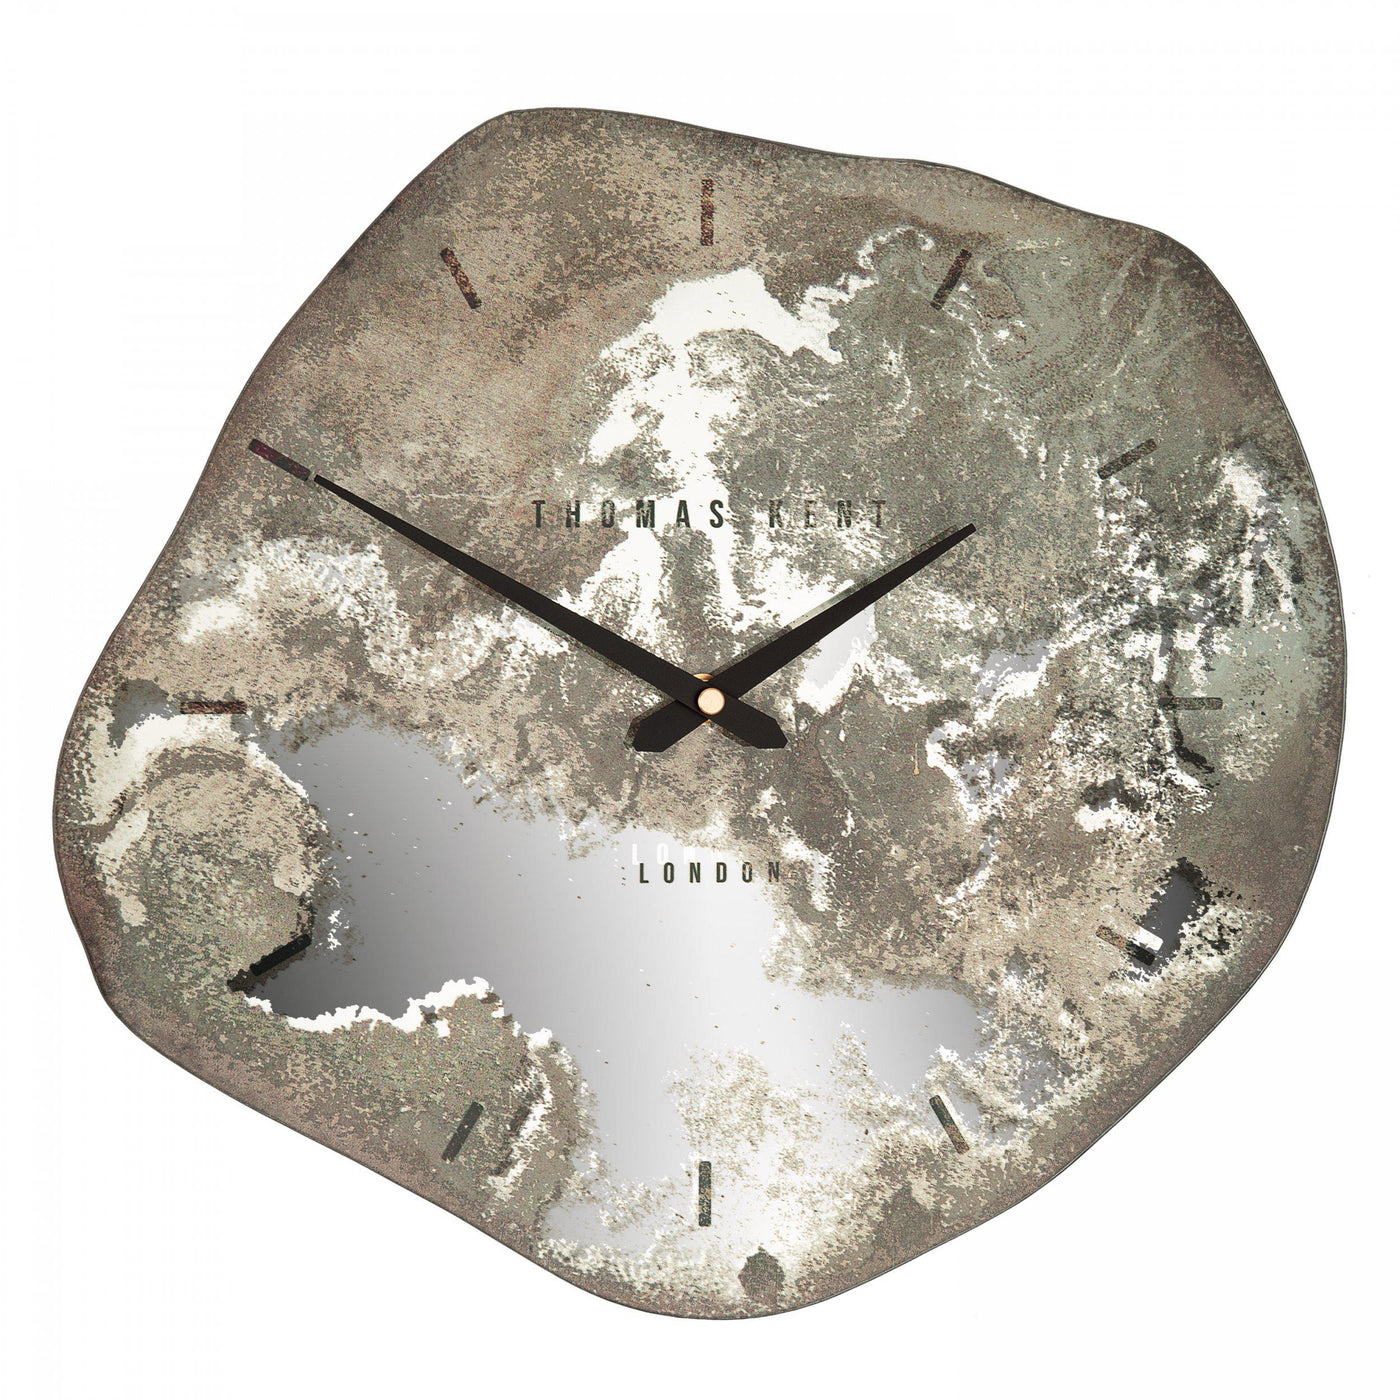 Thomas Kent London. Jewel Wall Clock Stone - timeframedclocks